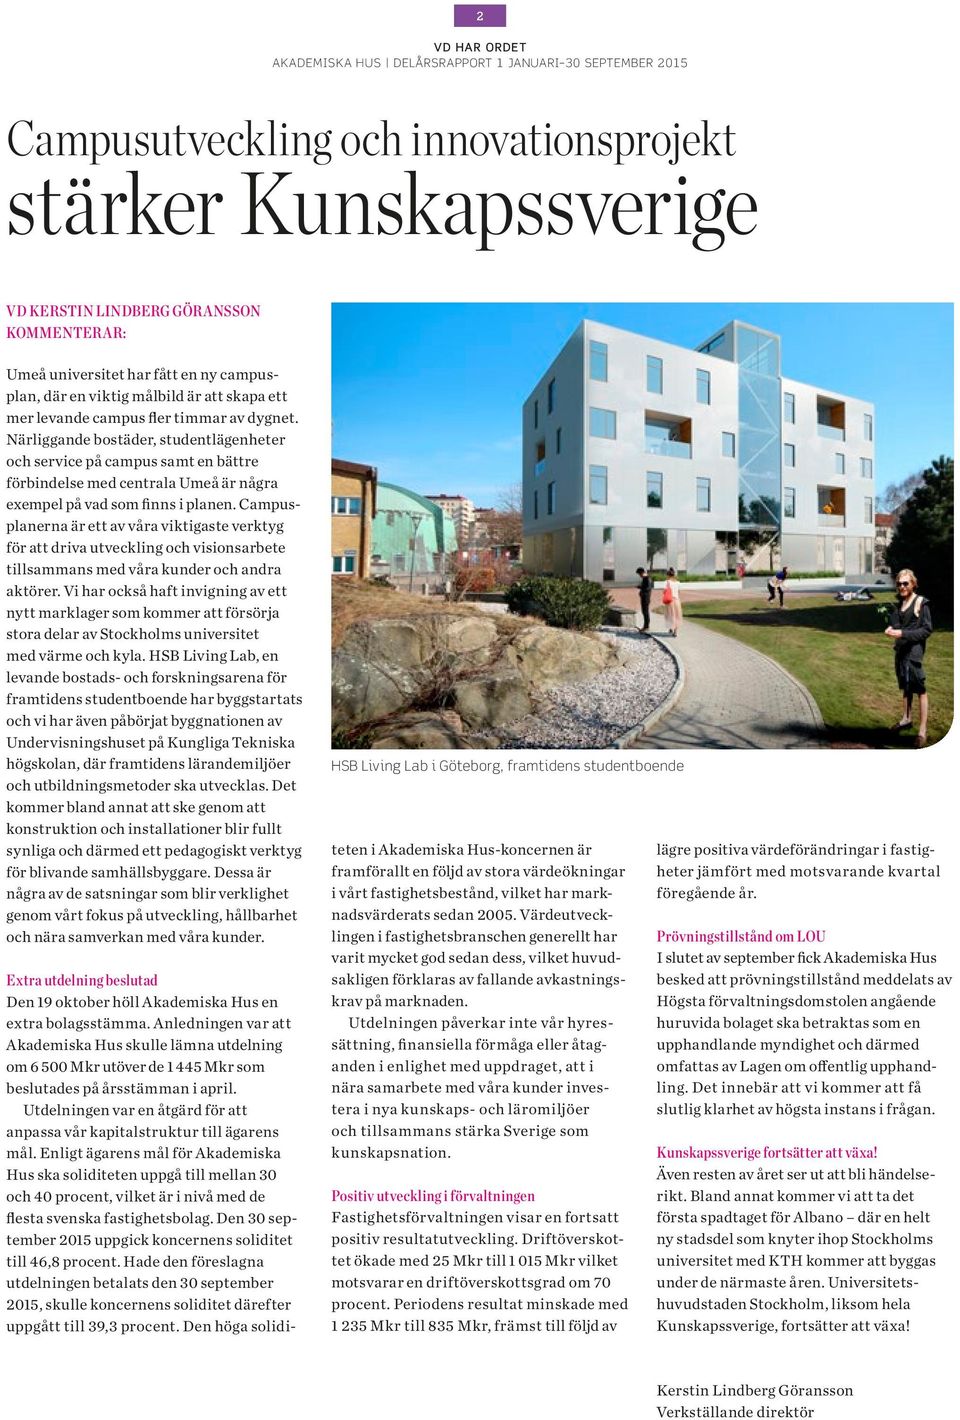 Närliggande bostäder, studentlägenheter och service på campus samt en bättre förbindelse med centrala Umeå är några exempel på vad som finns i planen.